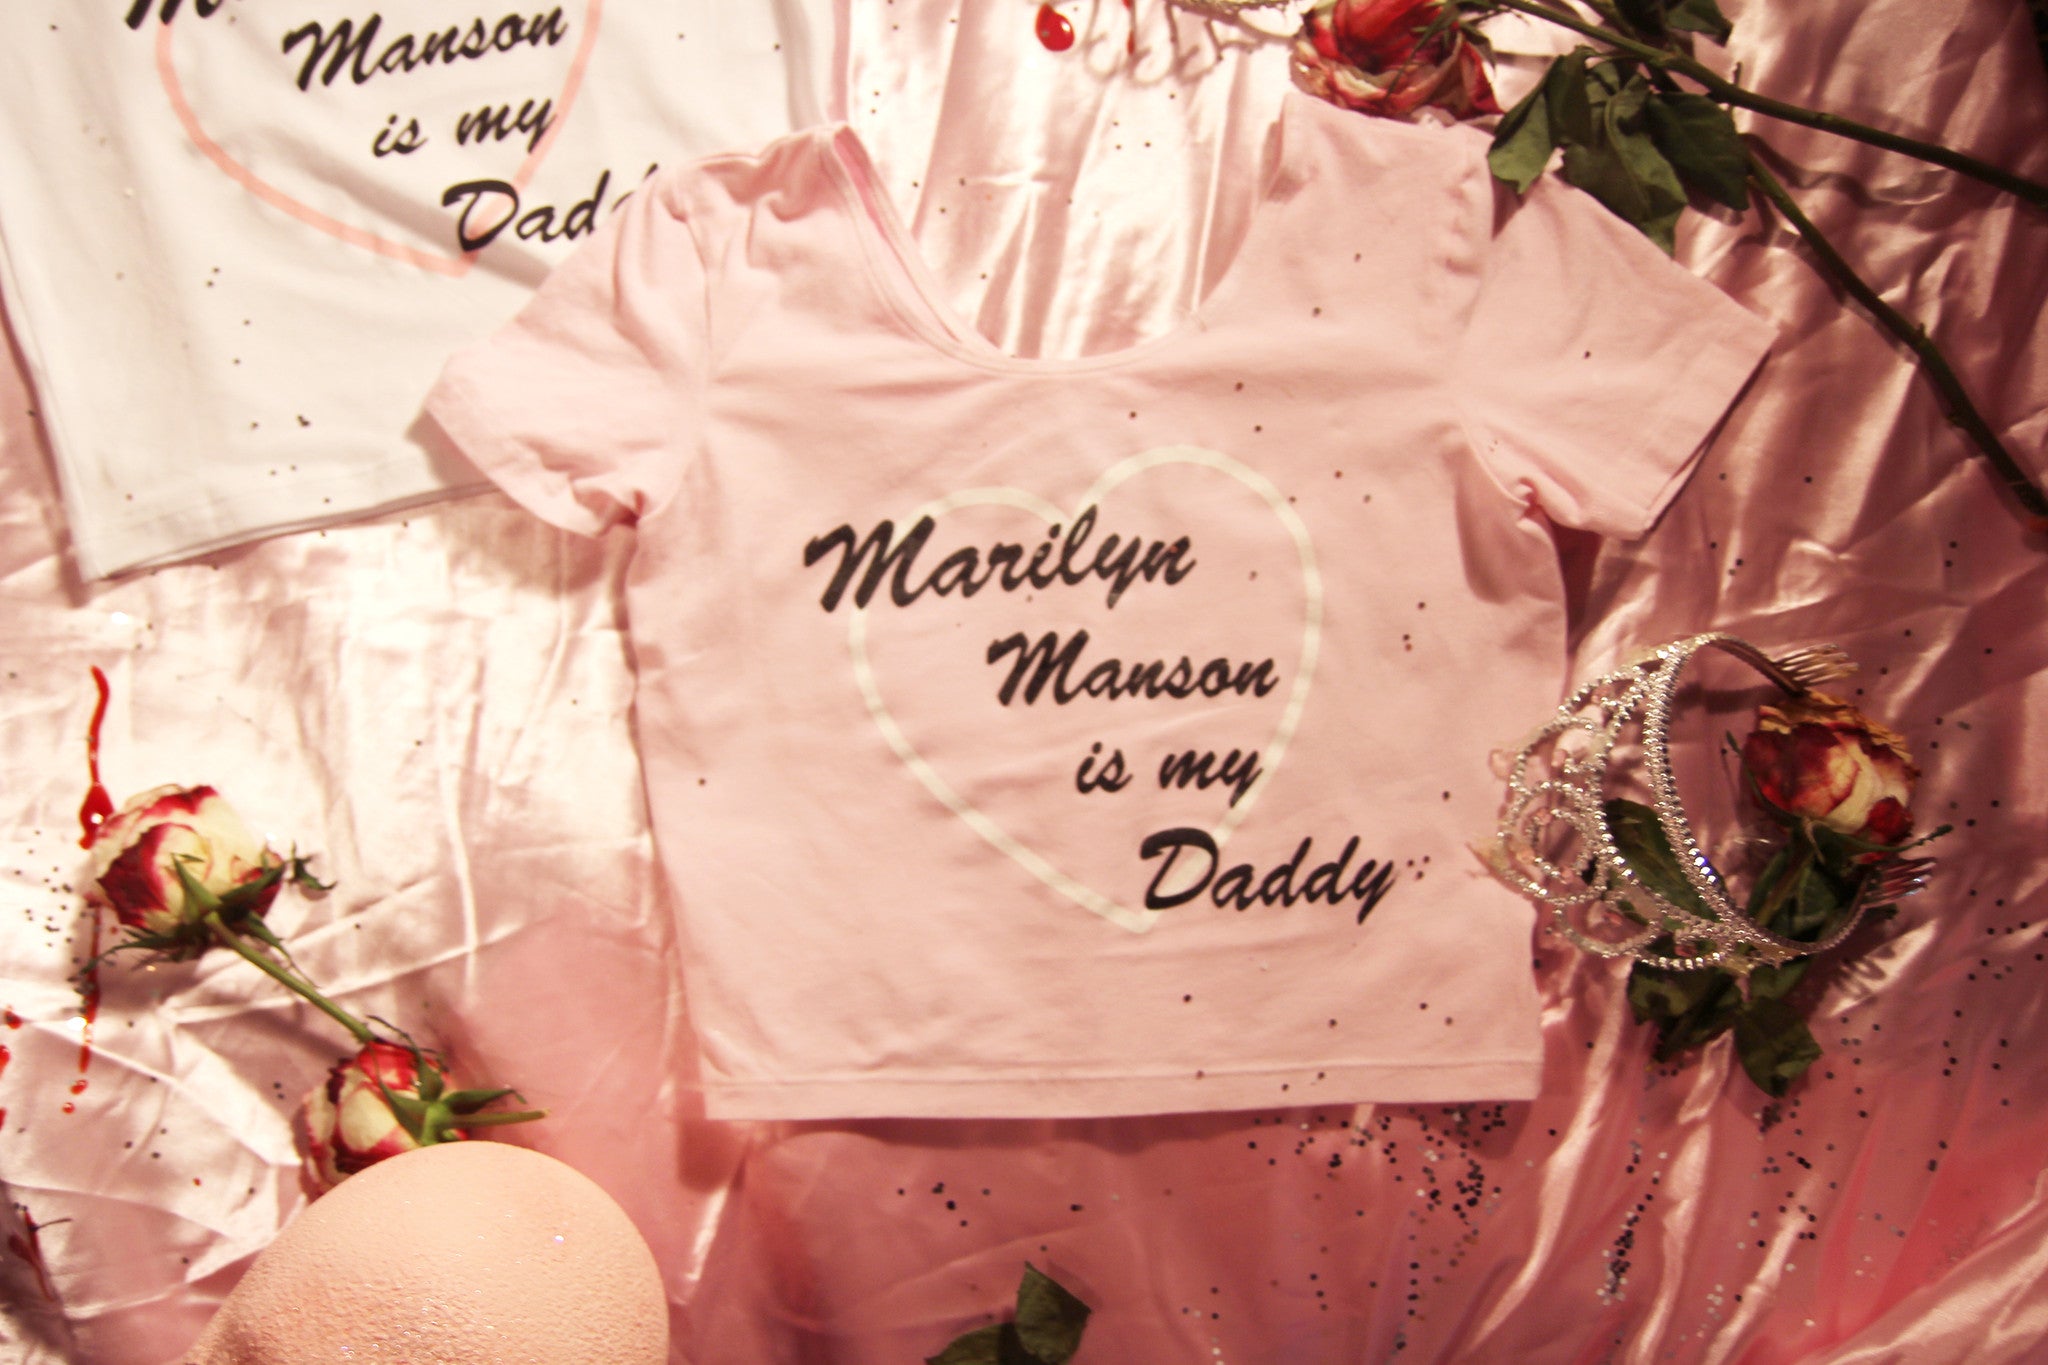 MARILYN MANSON IS MY DADDY